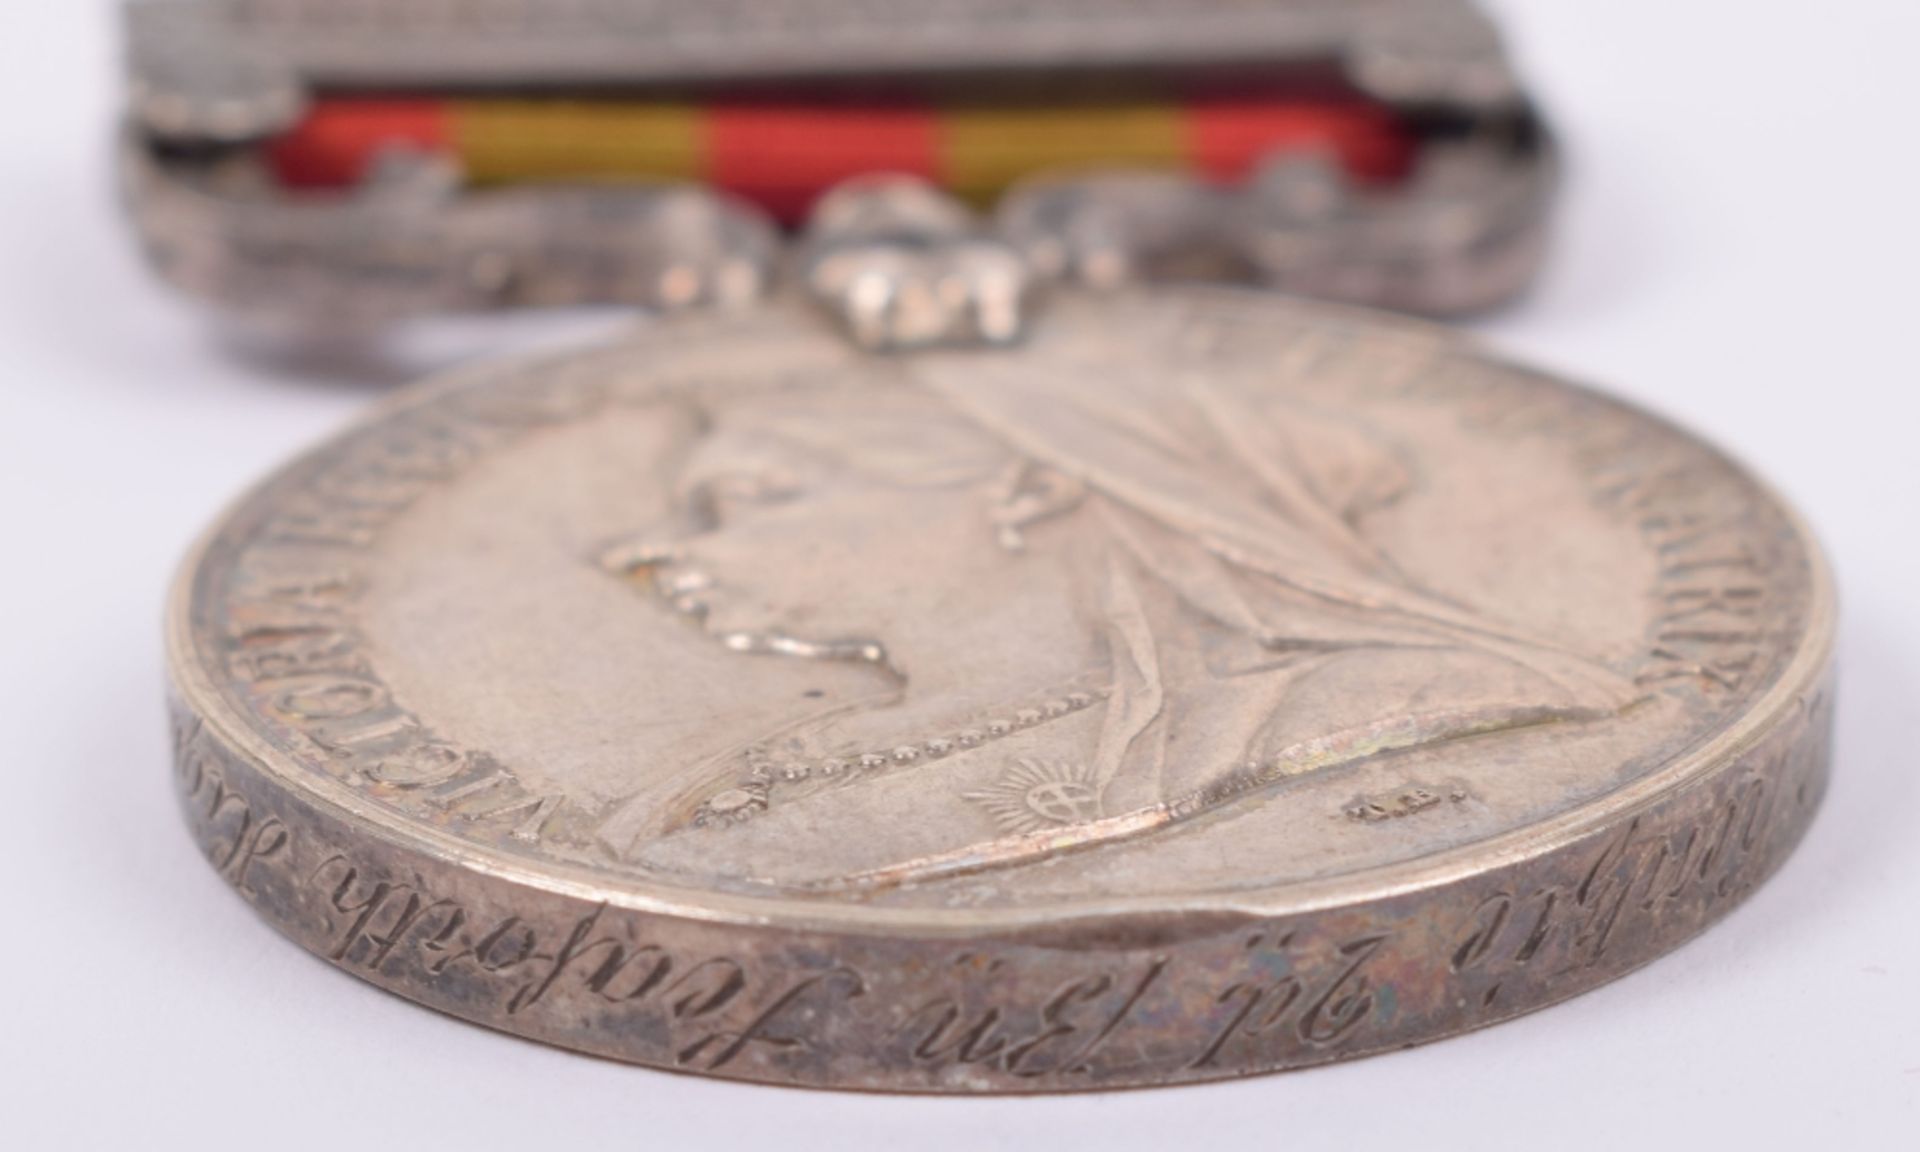 Indian General Service Medal 1895-1902 Seaforth Highlanders - Image 4 of 6